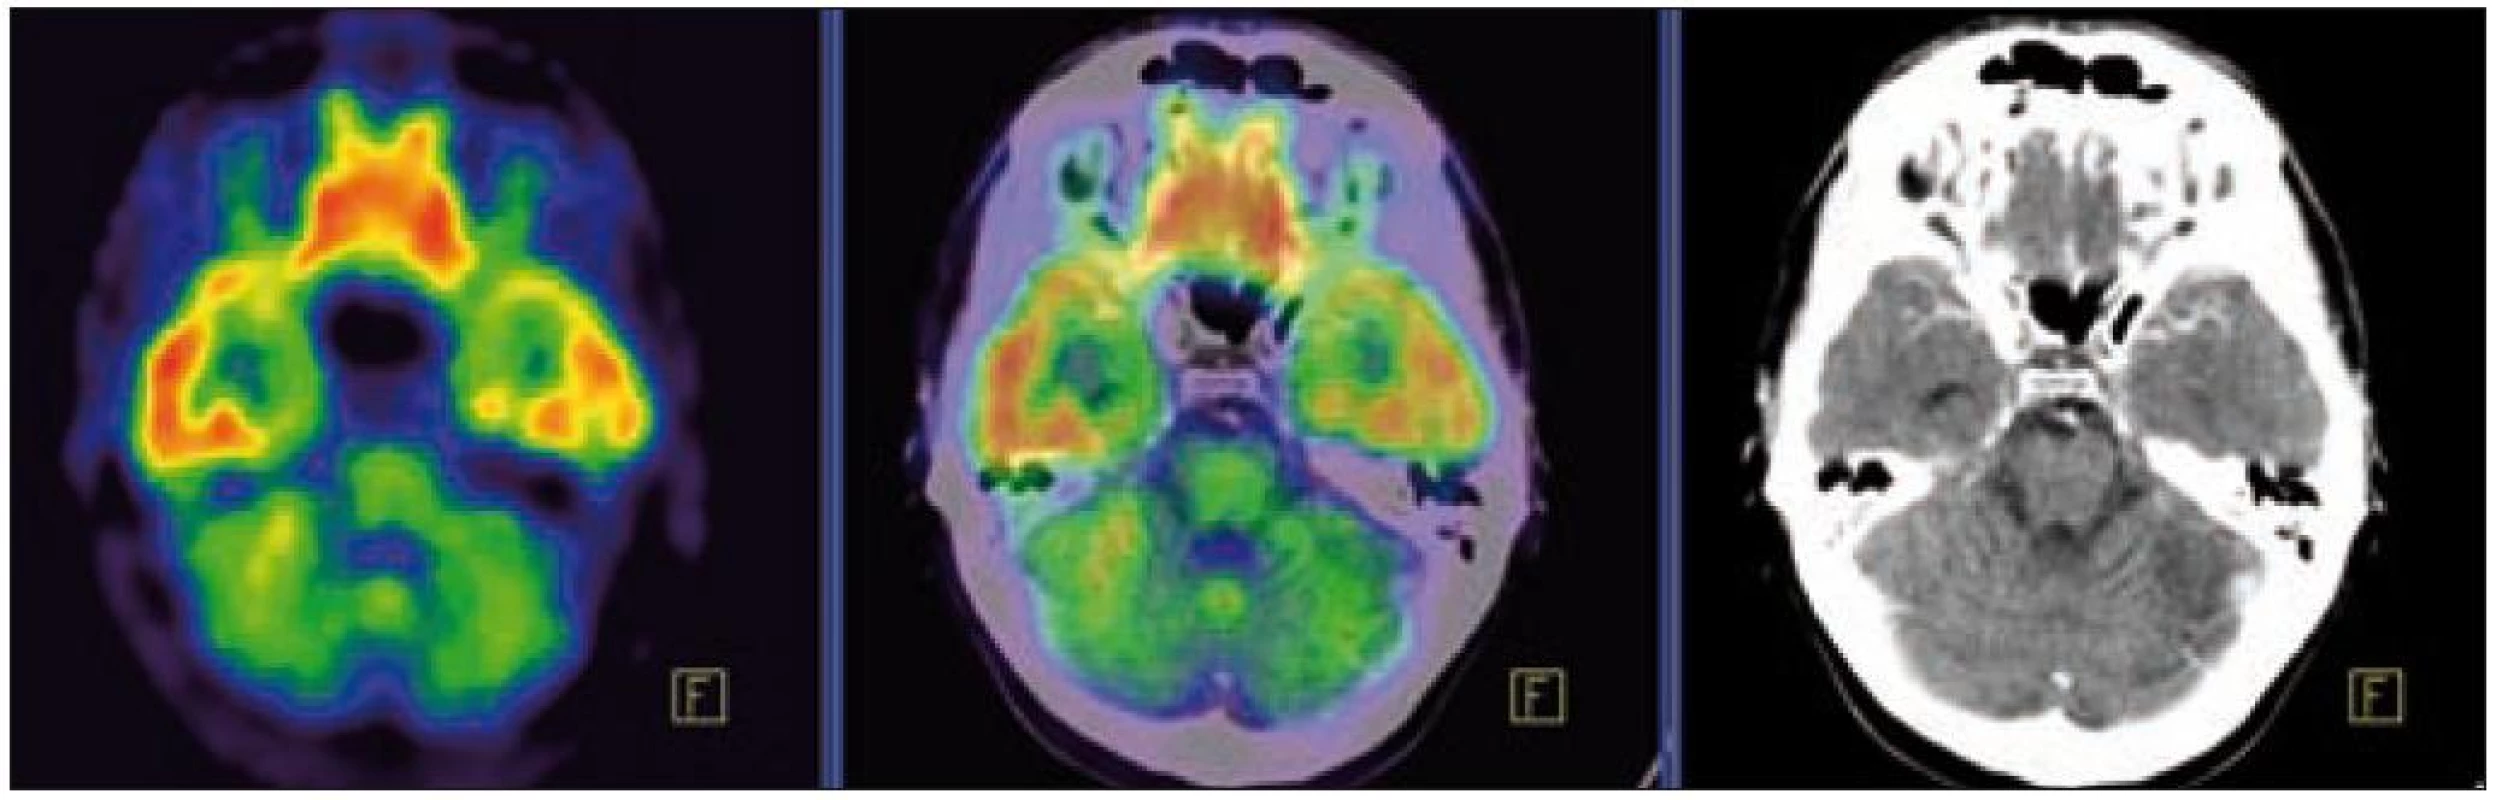 PET – low dose CT mozku. Snížená akumulace fluorodeoxyglukózy v oblasti cerebella, sagitální projekce atrofické změny cerebella v CT zobrazení.